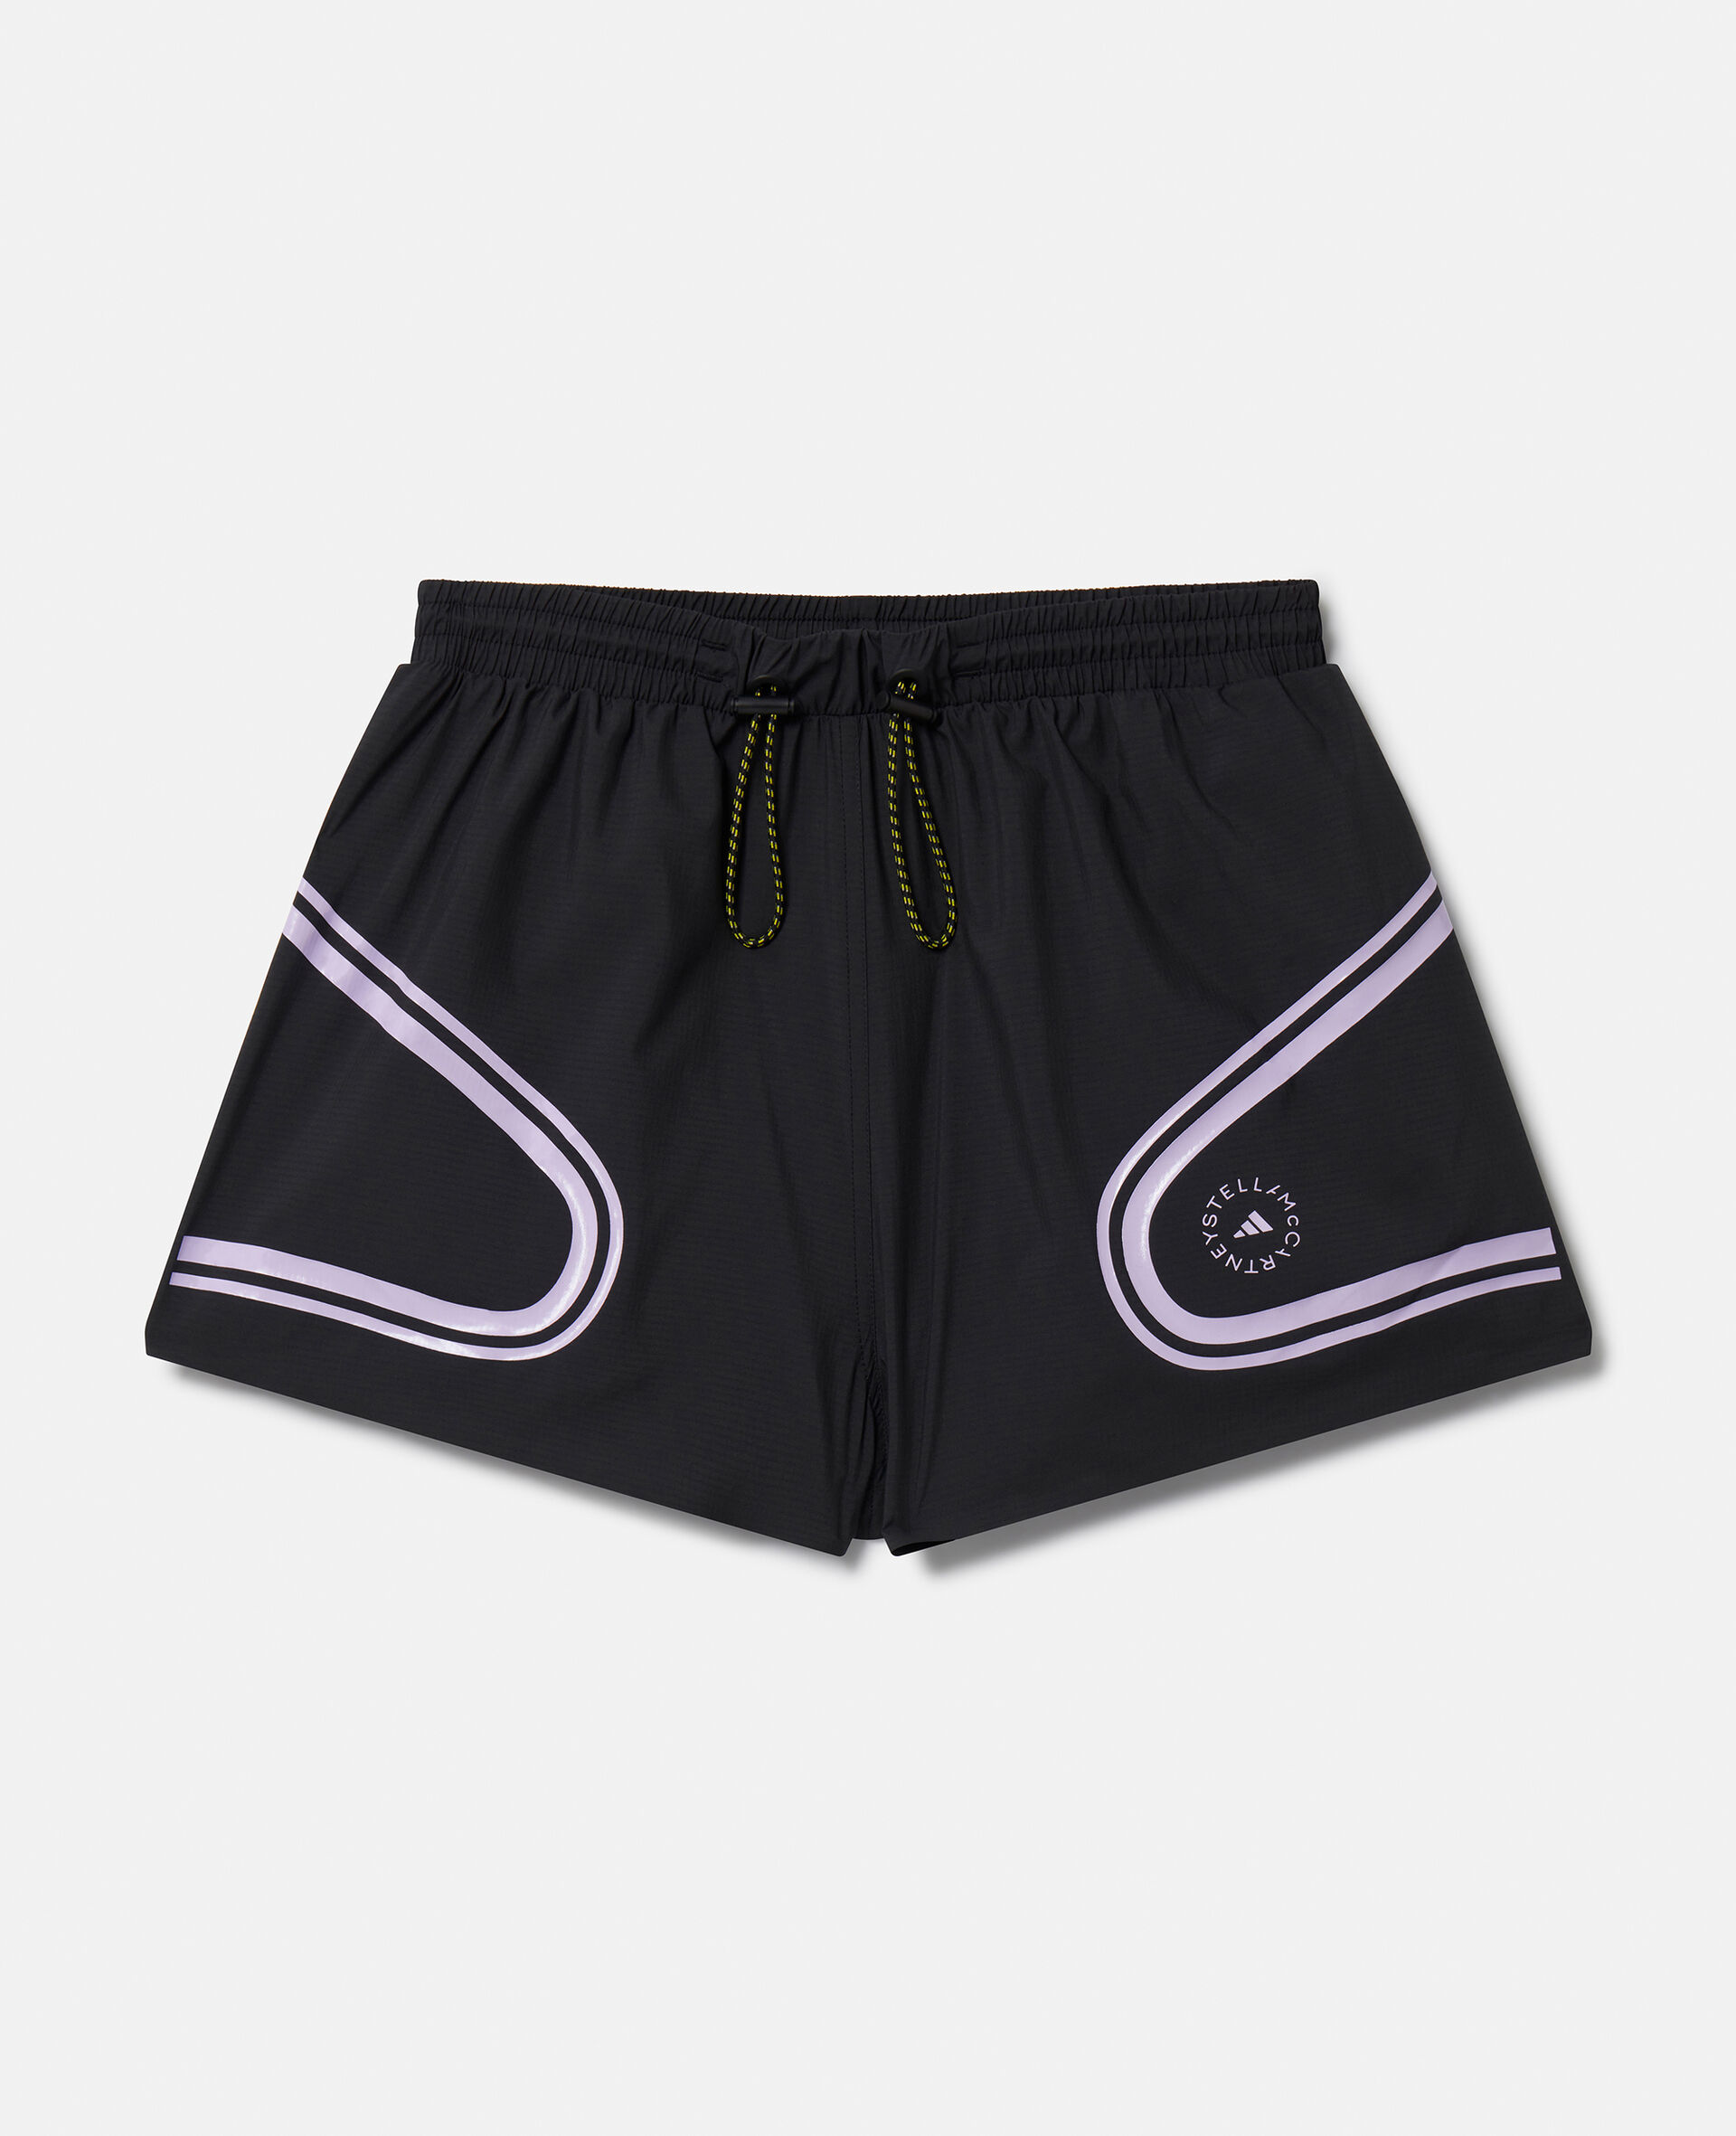 TruePace Running Shorts-Multicolour-medium